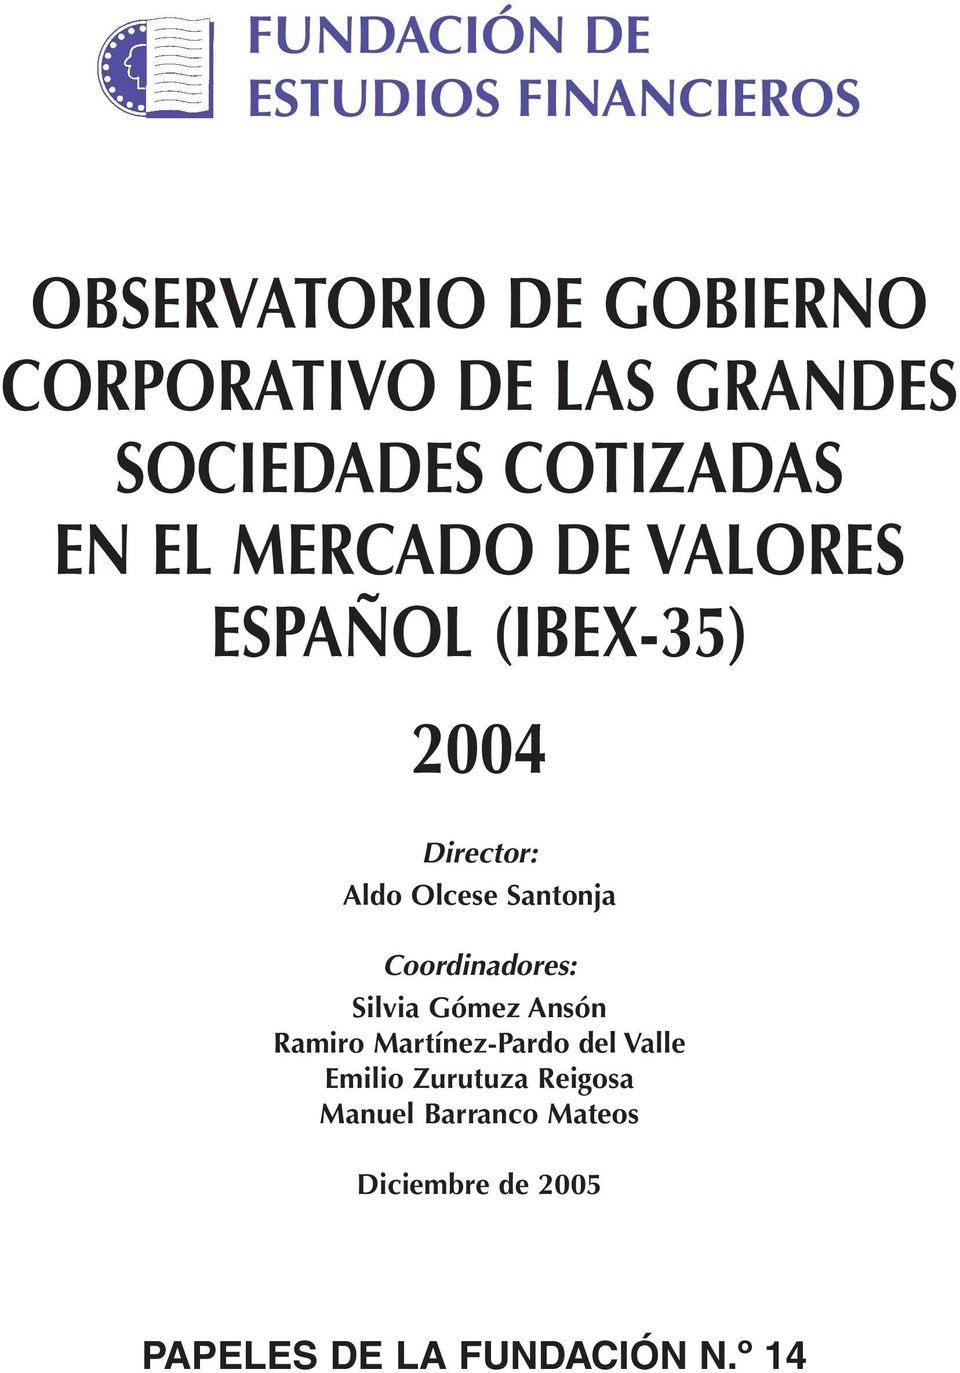 Olcese Santonja Coordinadores: Silvia Gómez Ansón Ramiro Martínez-Pardo del Valle